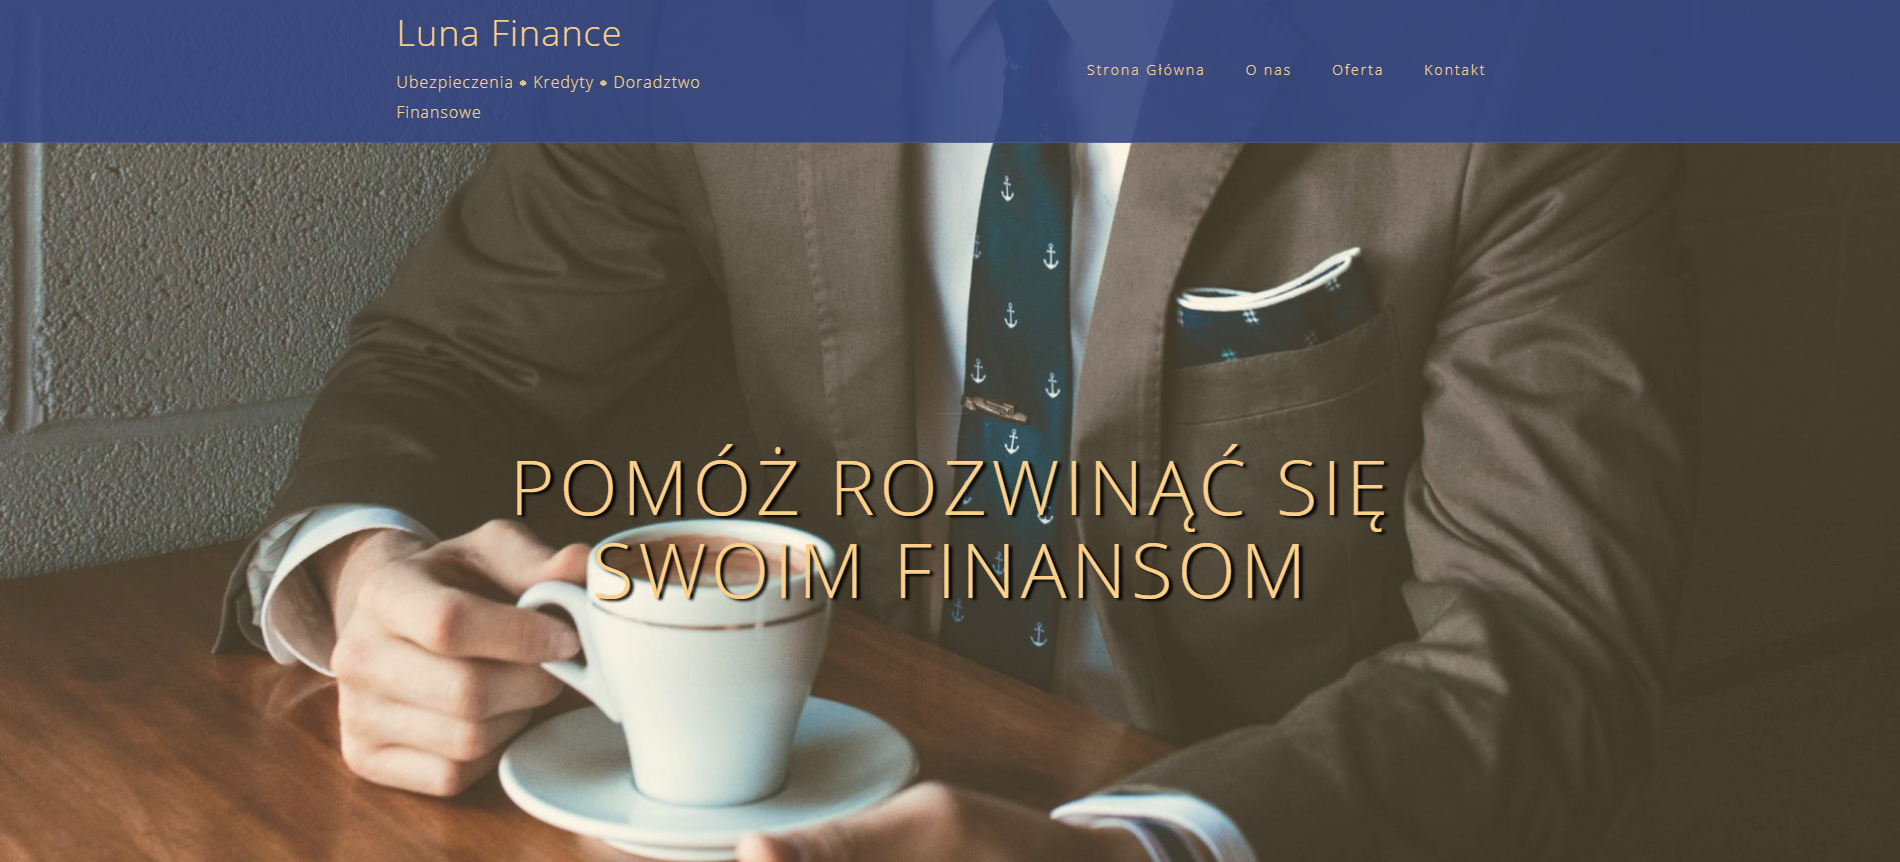 www.lunafinance.pl